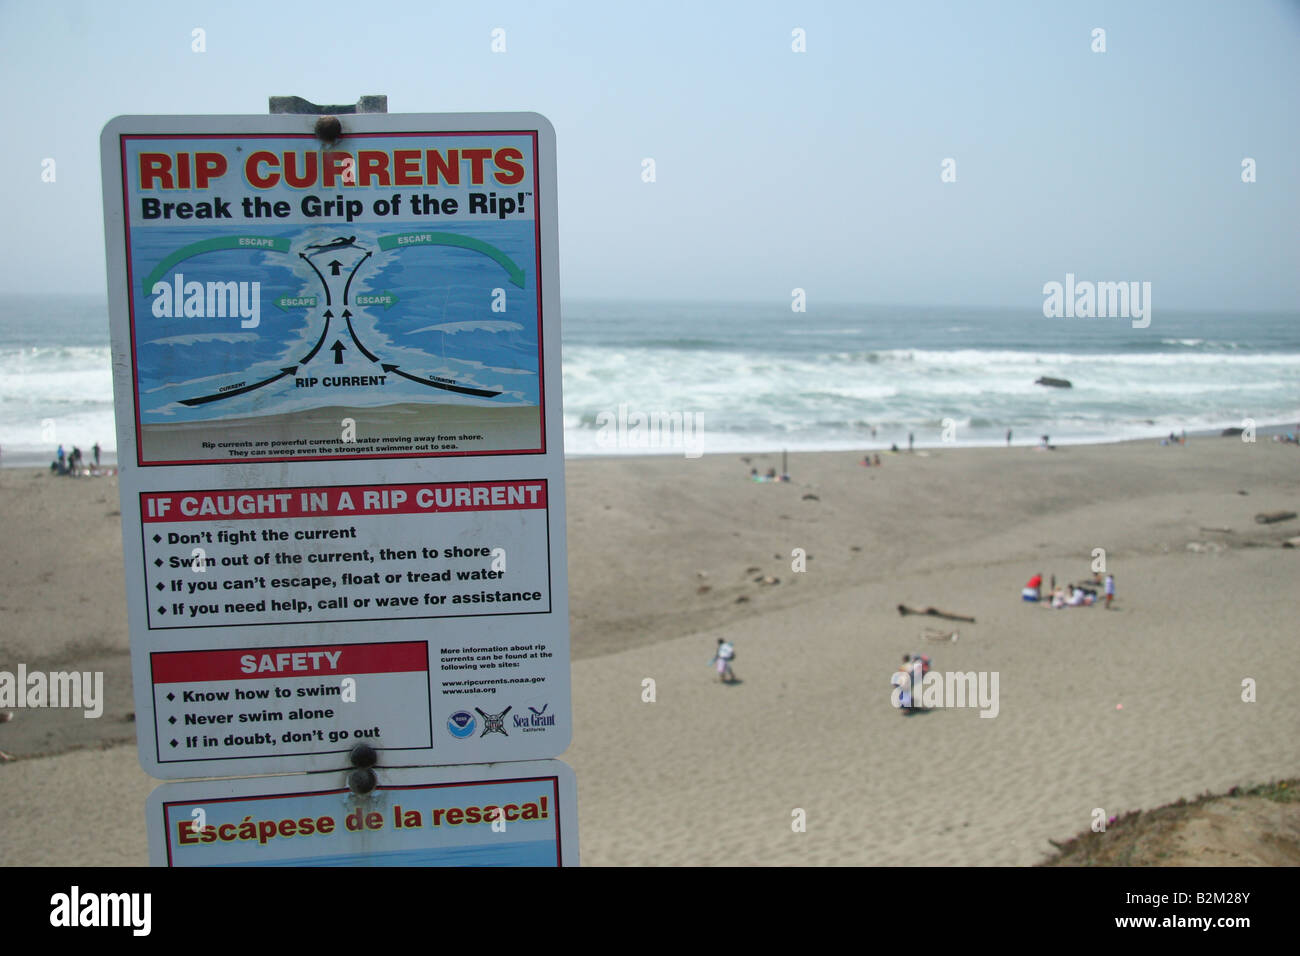 Correnti di rip segno di avvertimento sulla spiaggia. Foto Stock